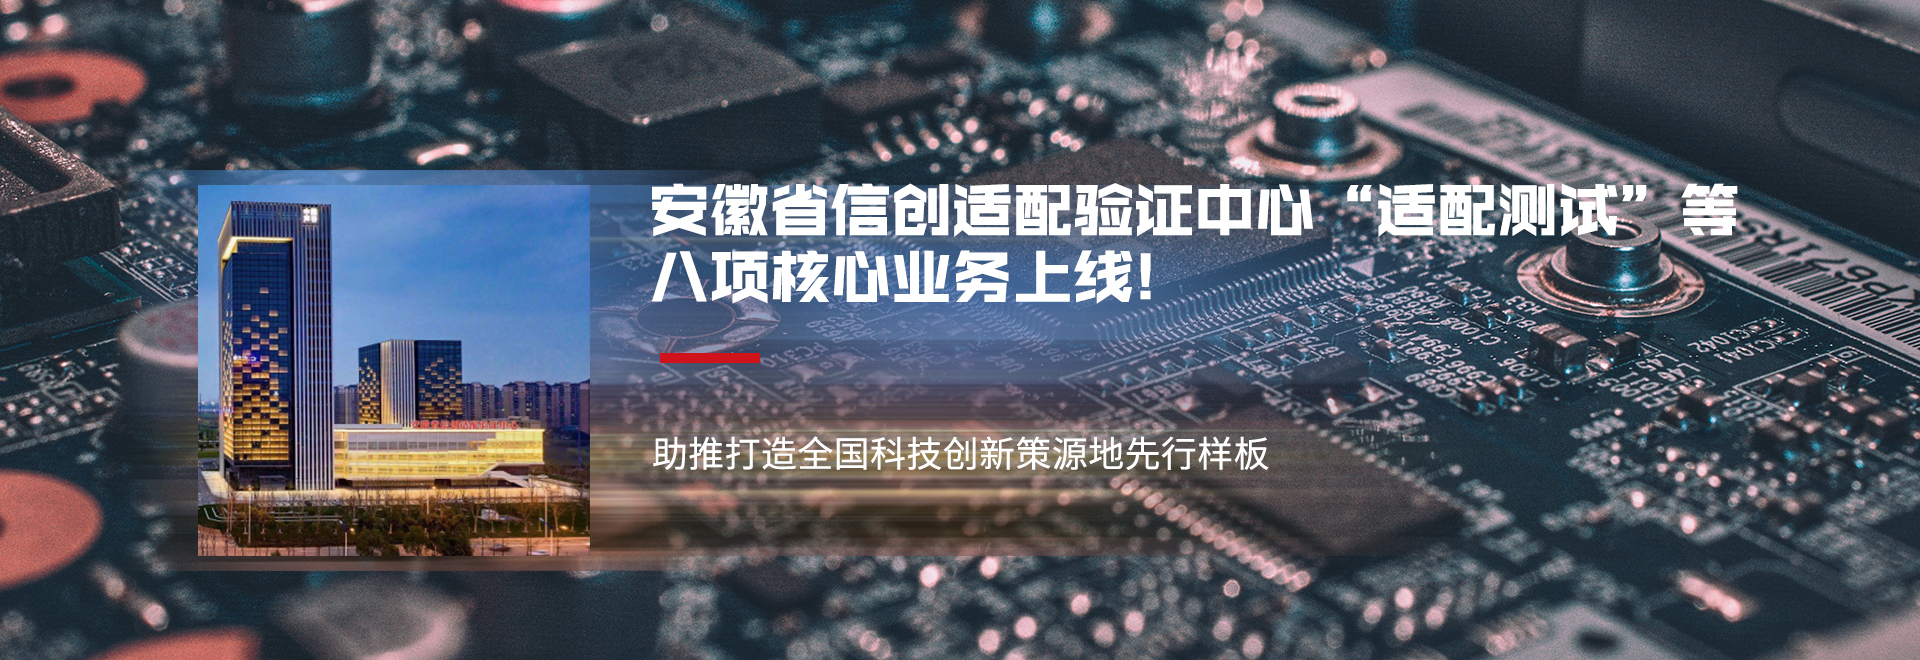 安徽省信息技术应用创新适配验证中心正式成立